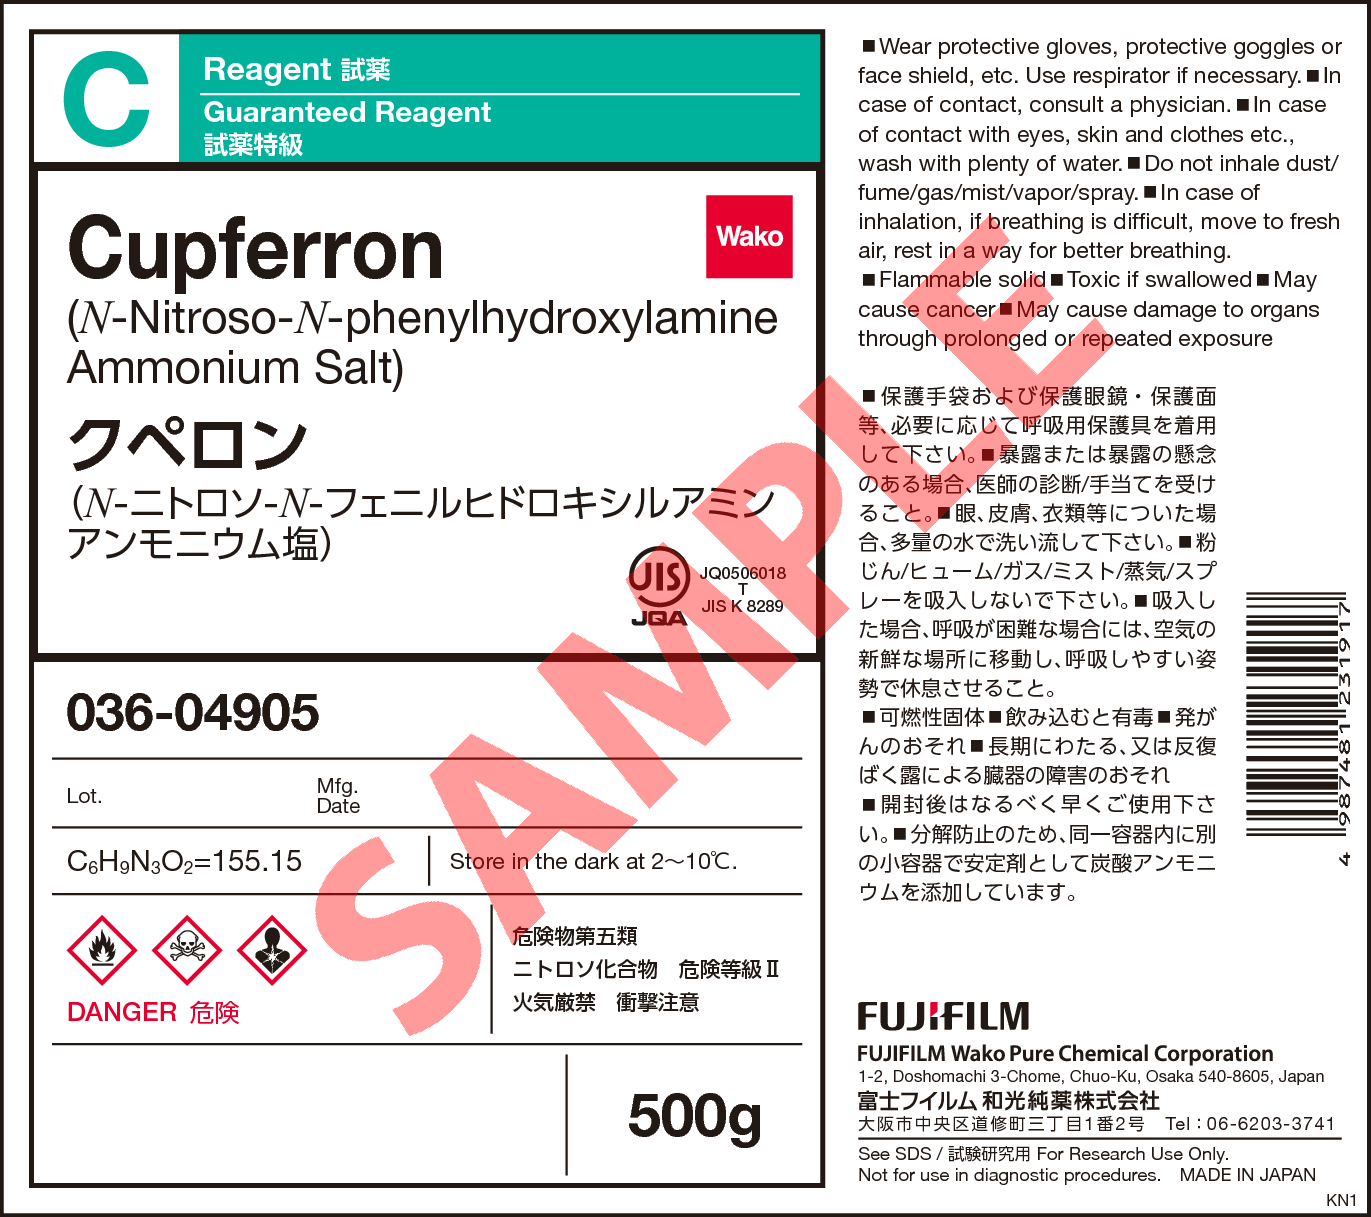 135 6 クペロン Cupferron 032 034 036 詳細情報 合成 材料 常用試薬 ラボウェア 試薬 富士フイルム和光純薬